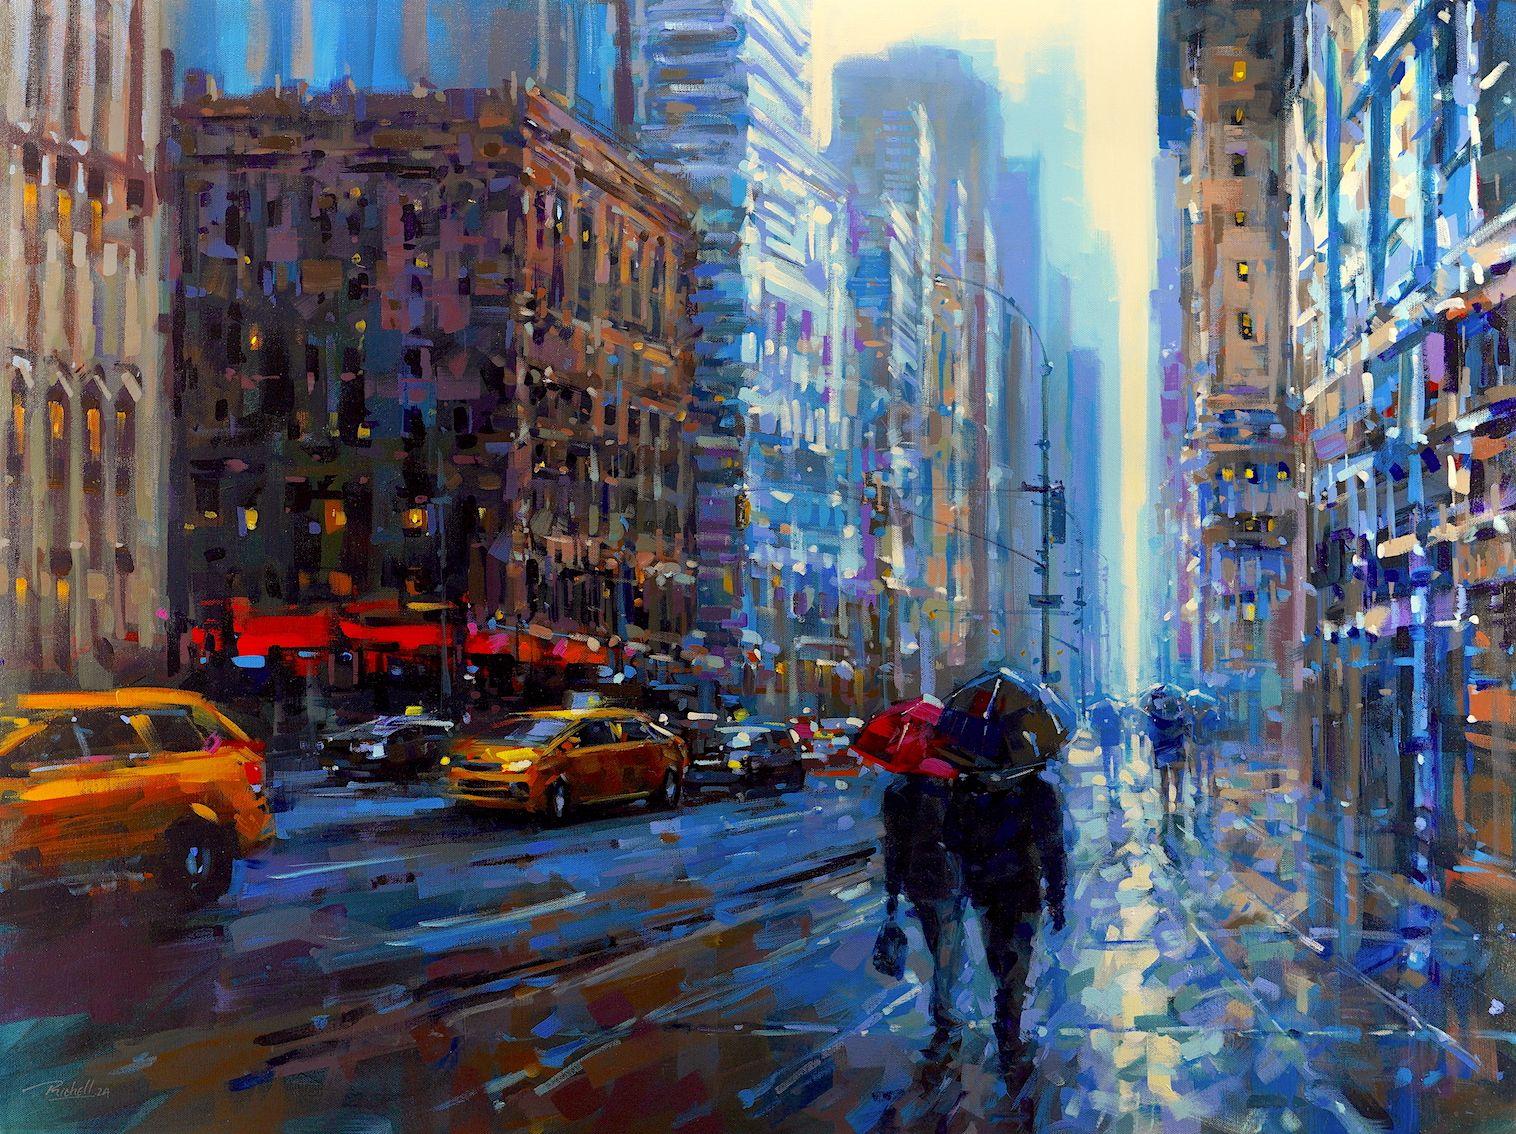 "City Synergy" est une peinture à l'huile sur toile de 30x40 réalisée par l'artiste Richell Castellon. L'image présentée est celle d'un jour de pluie dans le paysage urbain de la ville de New York. Les piétons déambulent dans les rues sous des